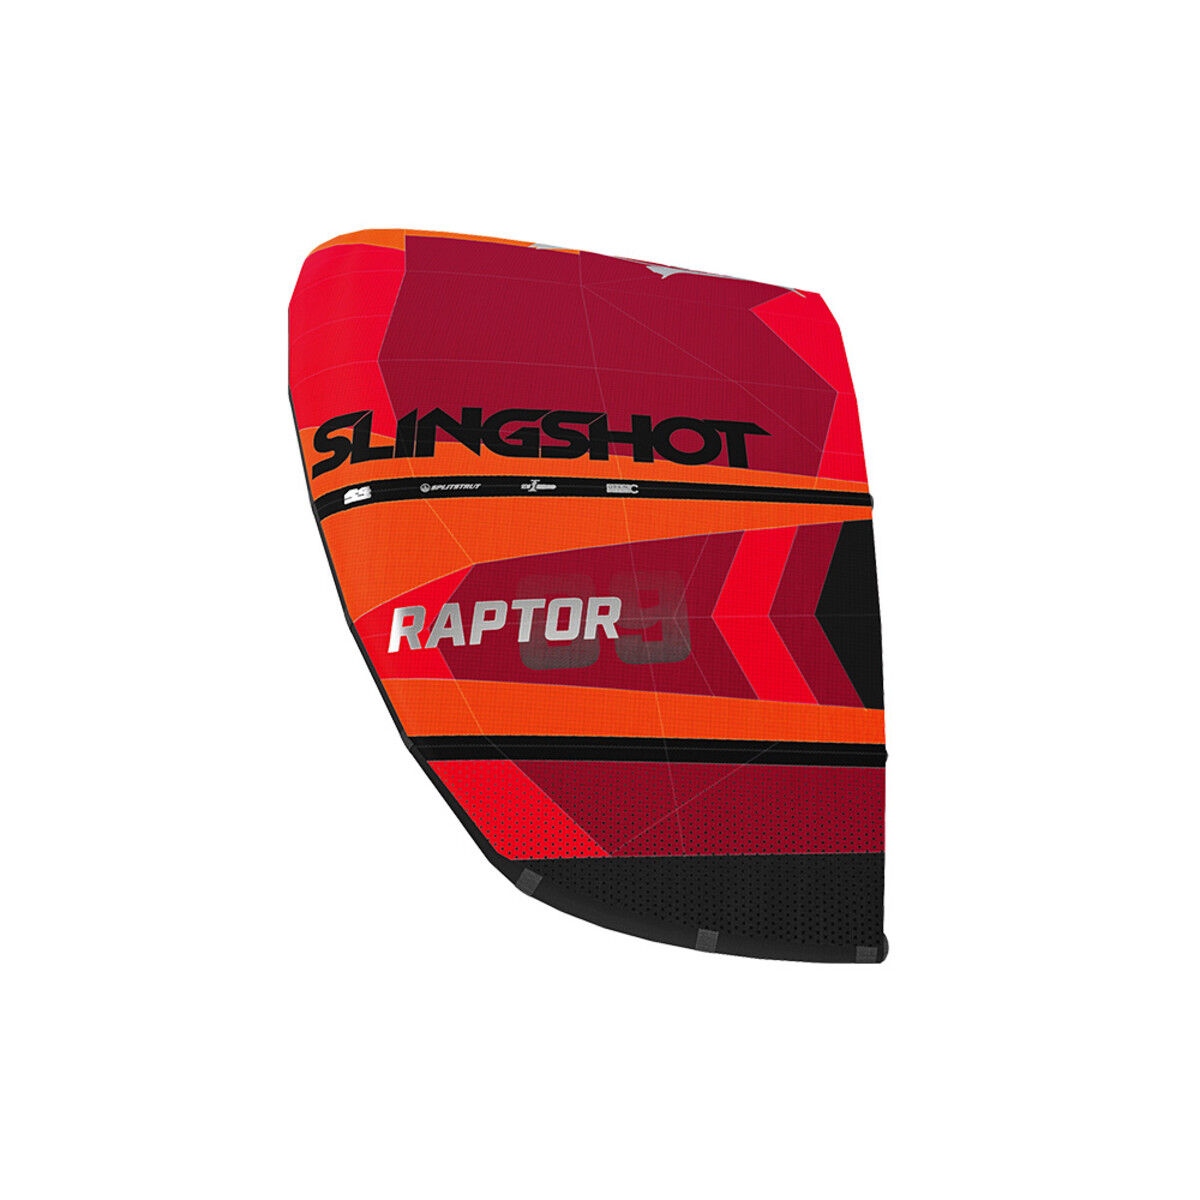 Slingshot Raptor 2020